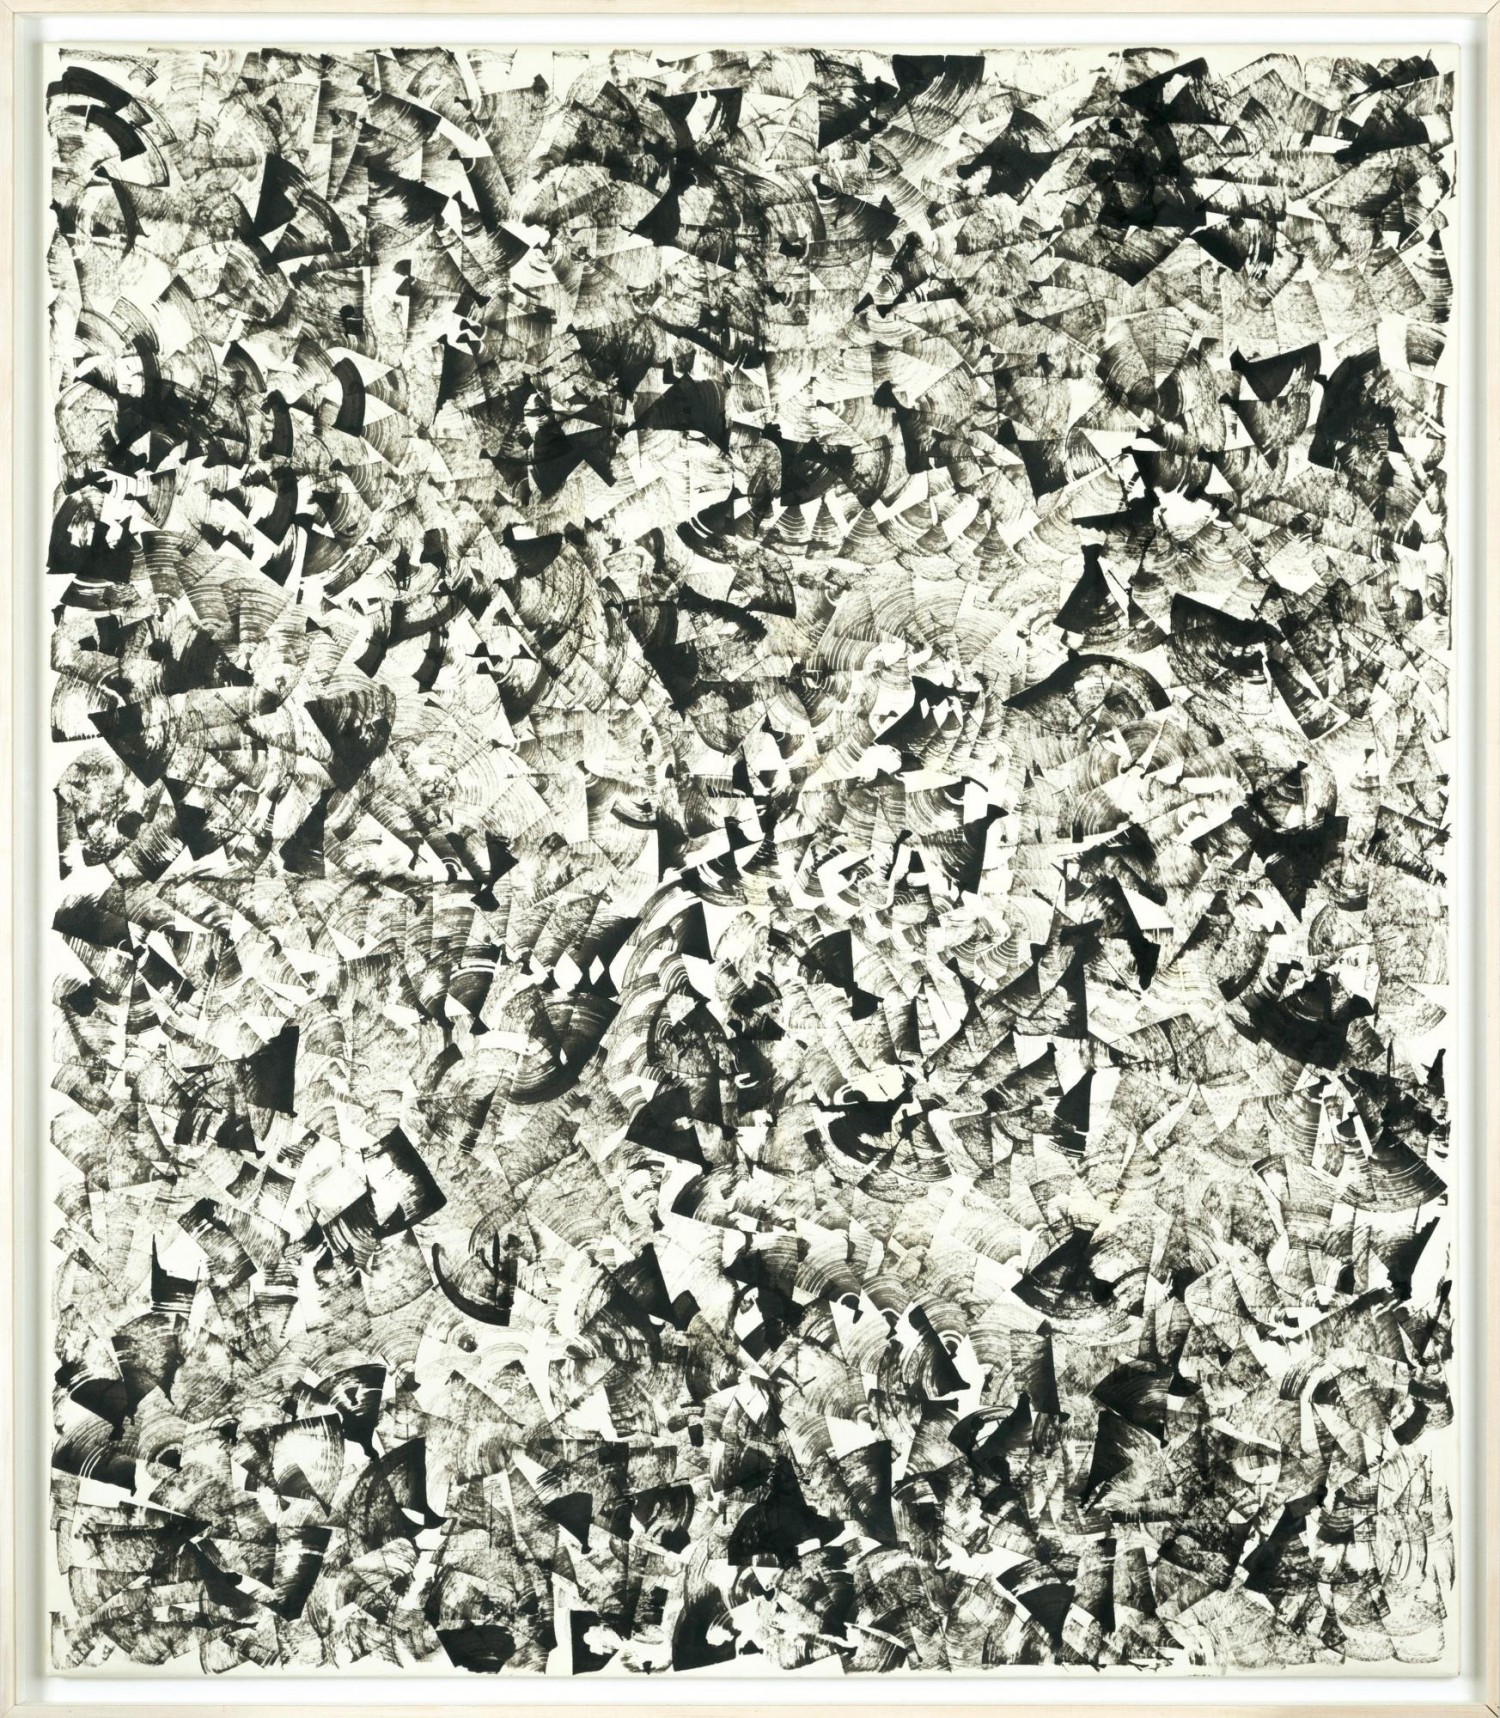 Milan Grygar: Dřívková kresba, dřívková kresba na kartonu, 160 x 140 cm, cena: 800 000 Kč (+ 20% provize), 1. Art Consulting 20. 2. 2022